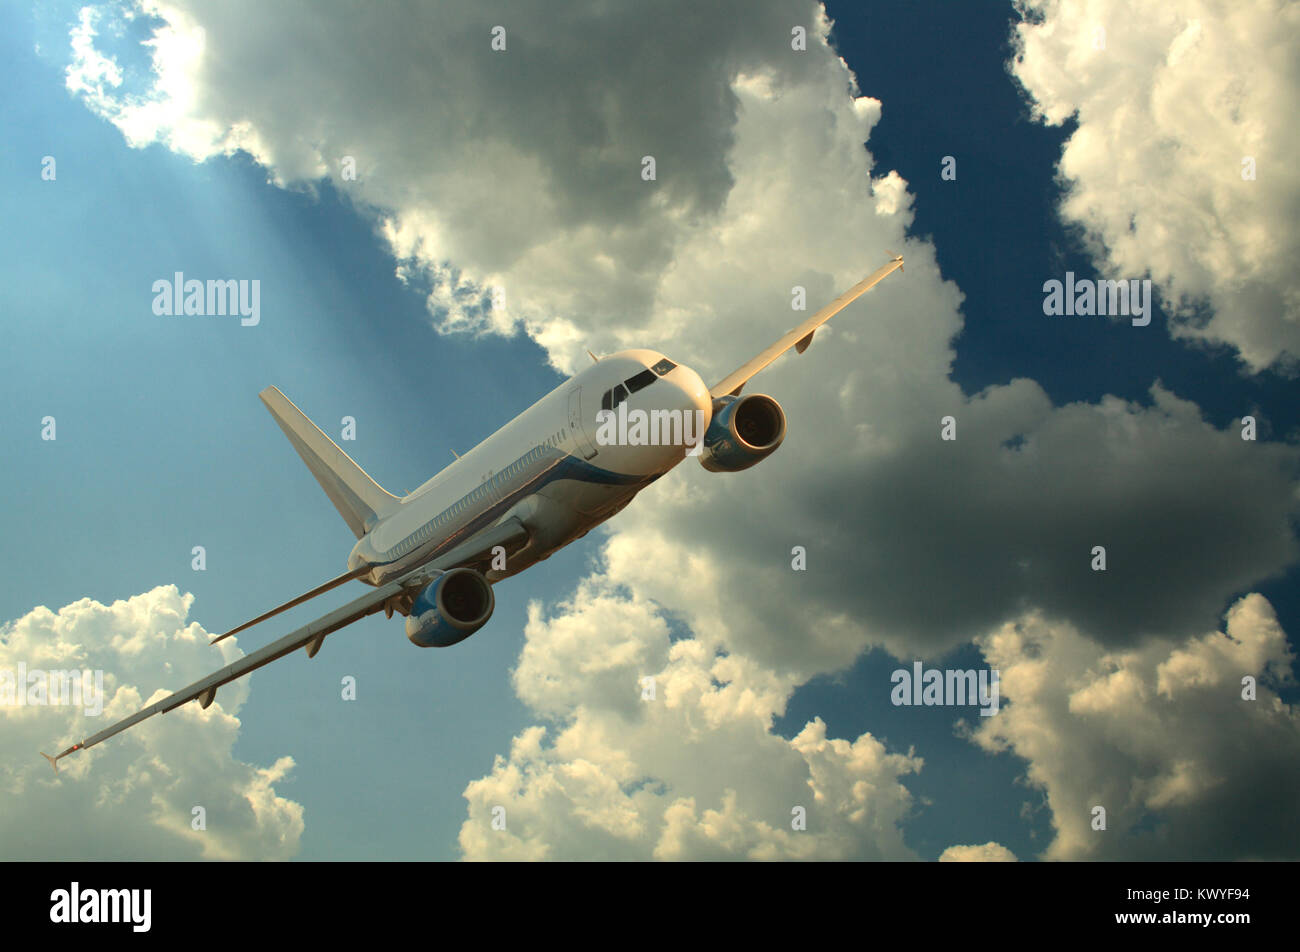 Aereo passeggeri su sfondo scuro con il cielo al tramonto e nuvole Foto Stock